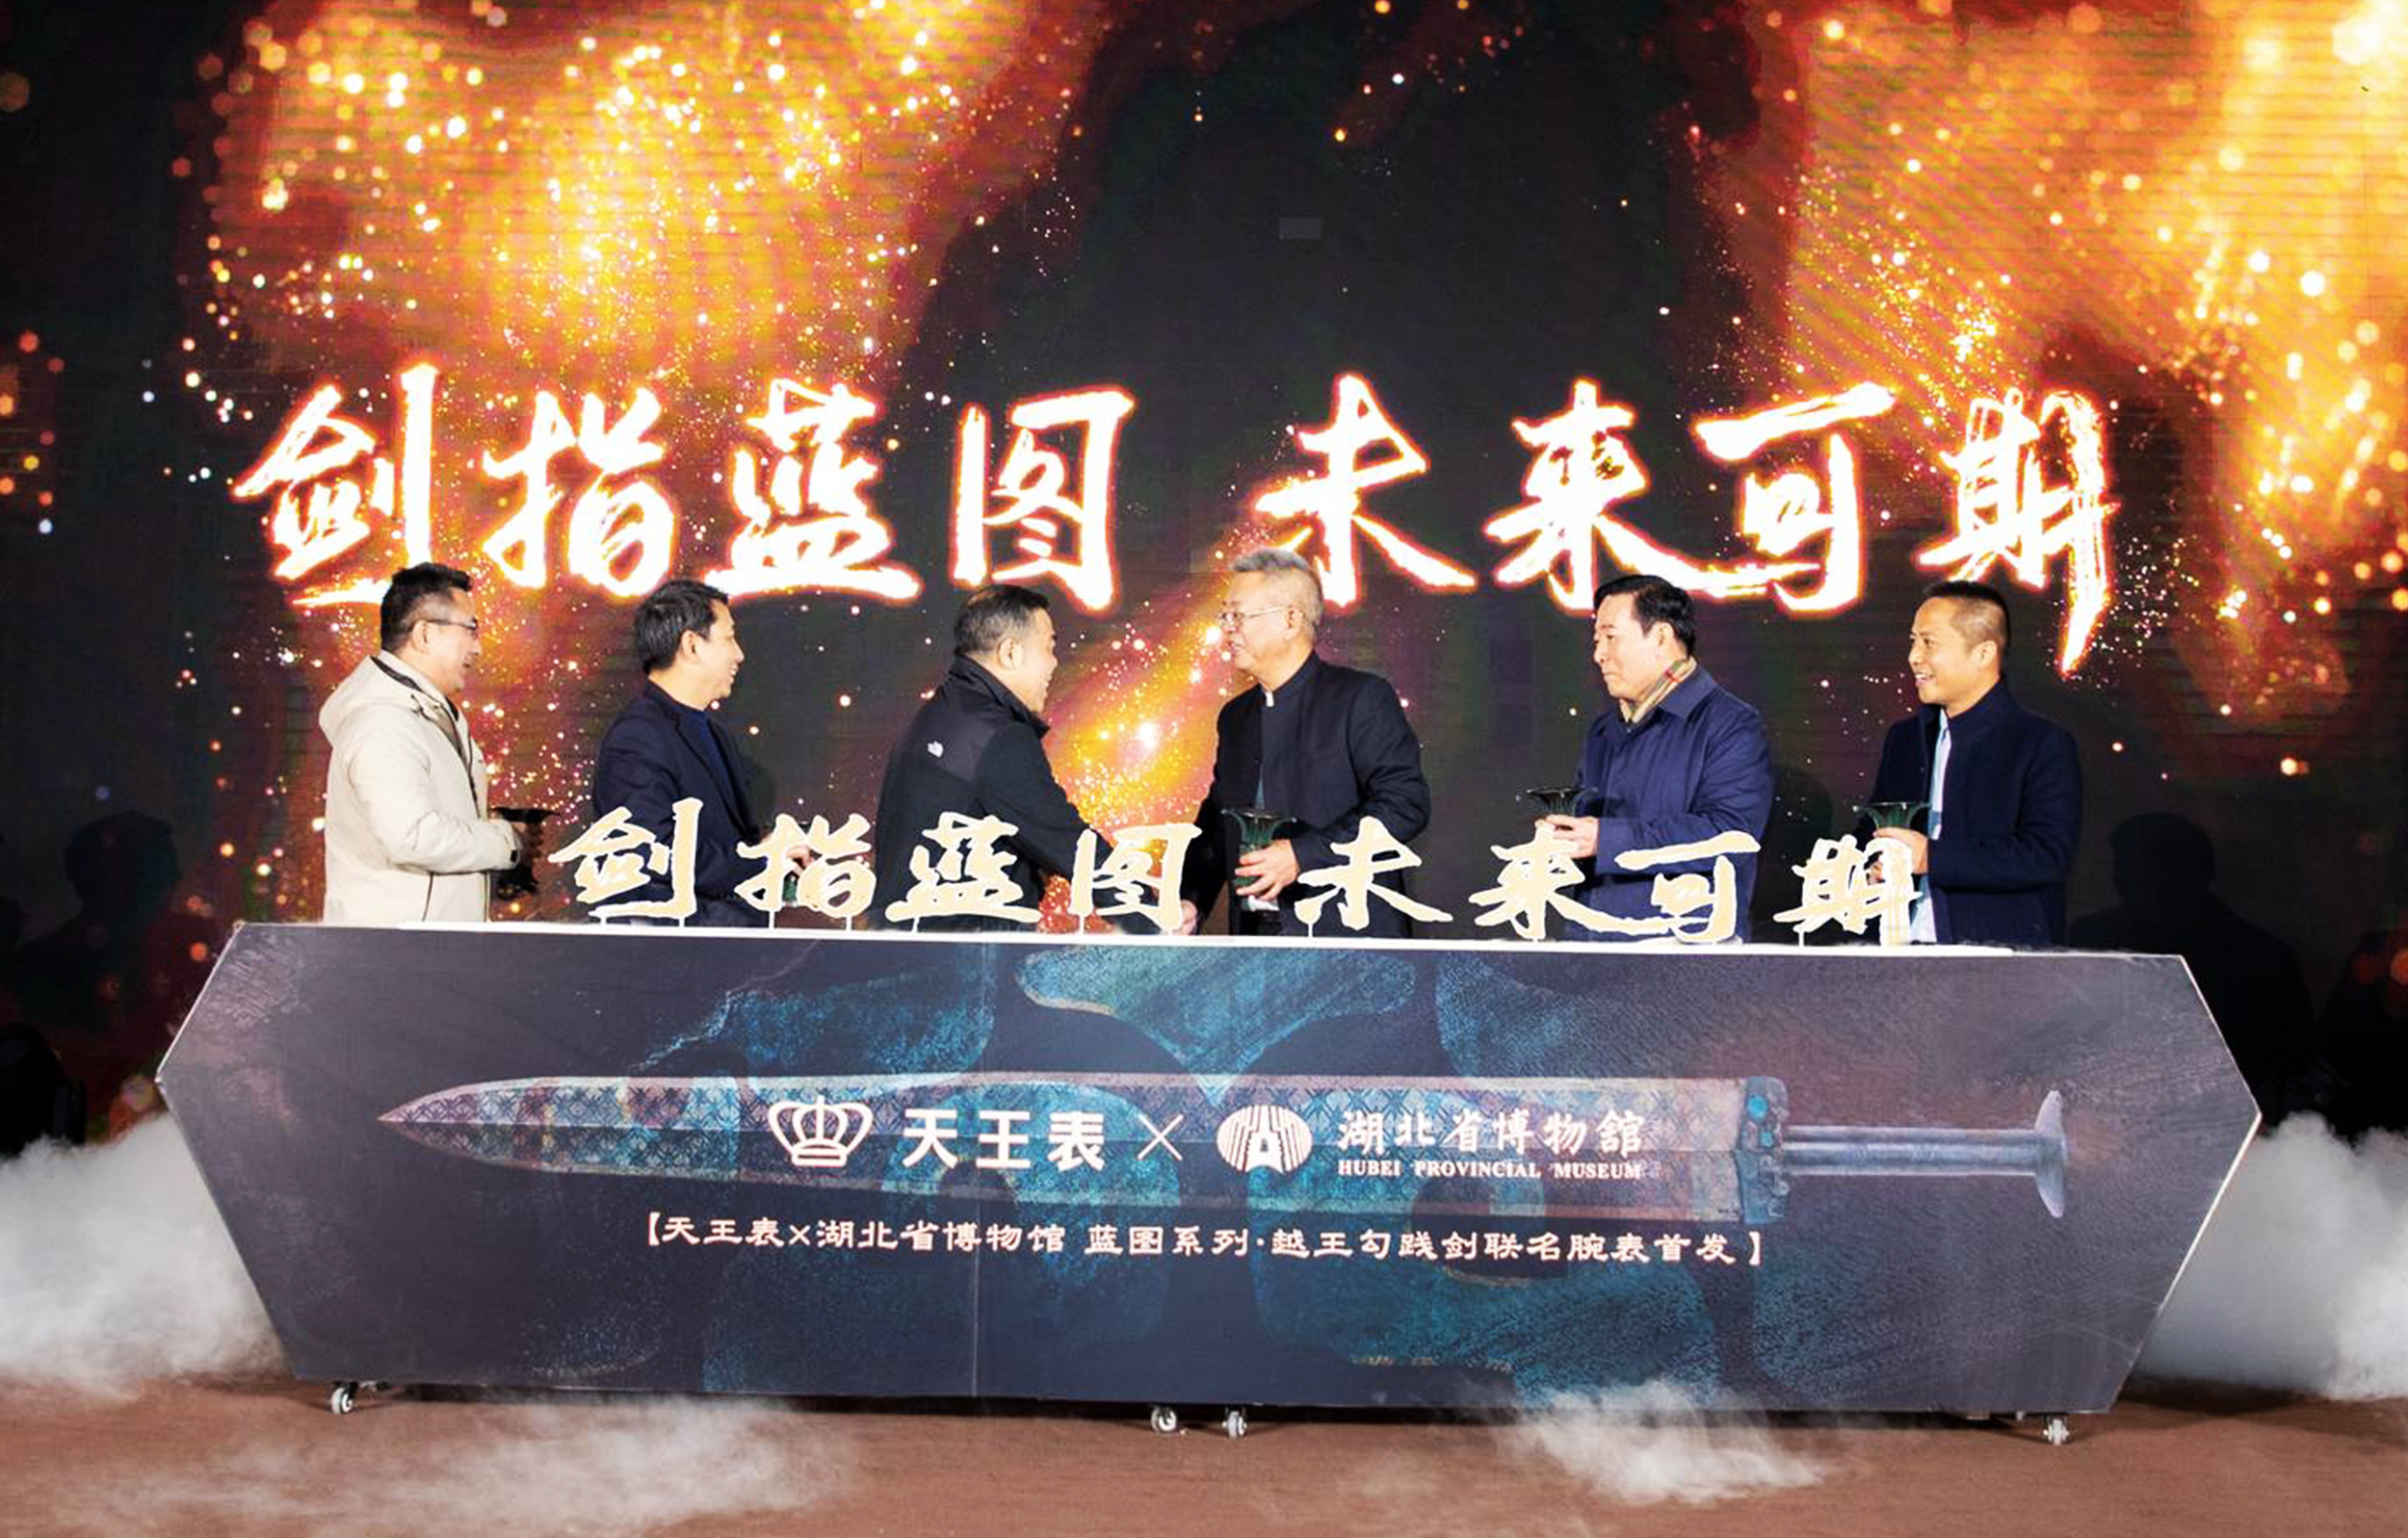 天王表联合湖北省博物馆推出“越王勾践剑联名腕表”！发布会在鄂博举行